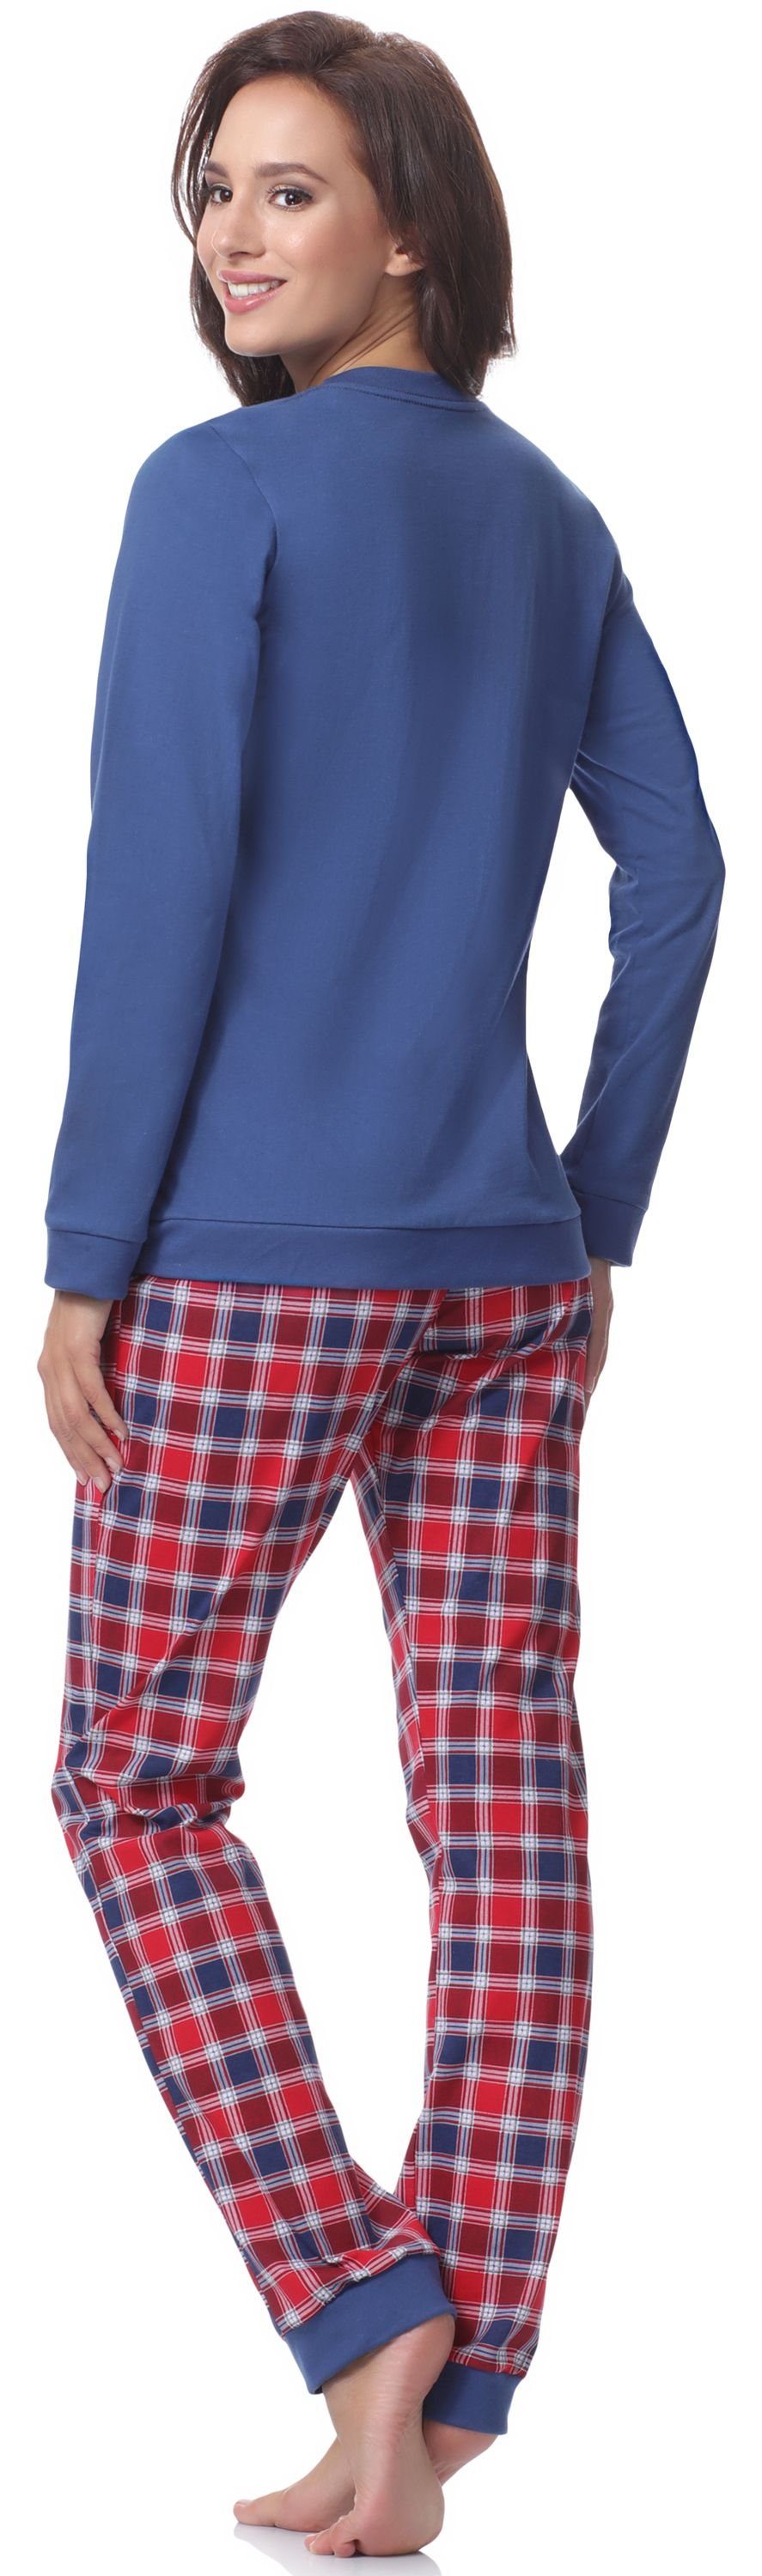 Cornette Jeans Damen Schlafanzug 2016 Schlafanzug 671 (Fox3)